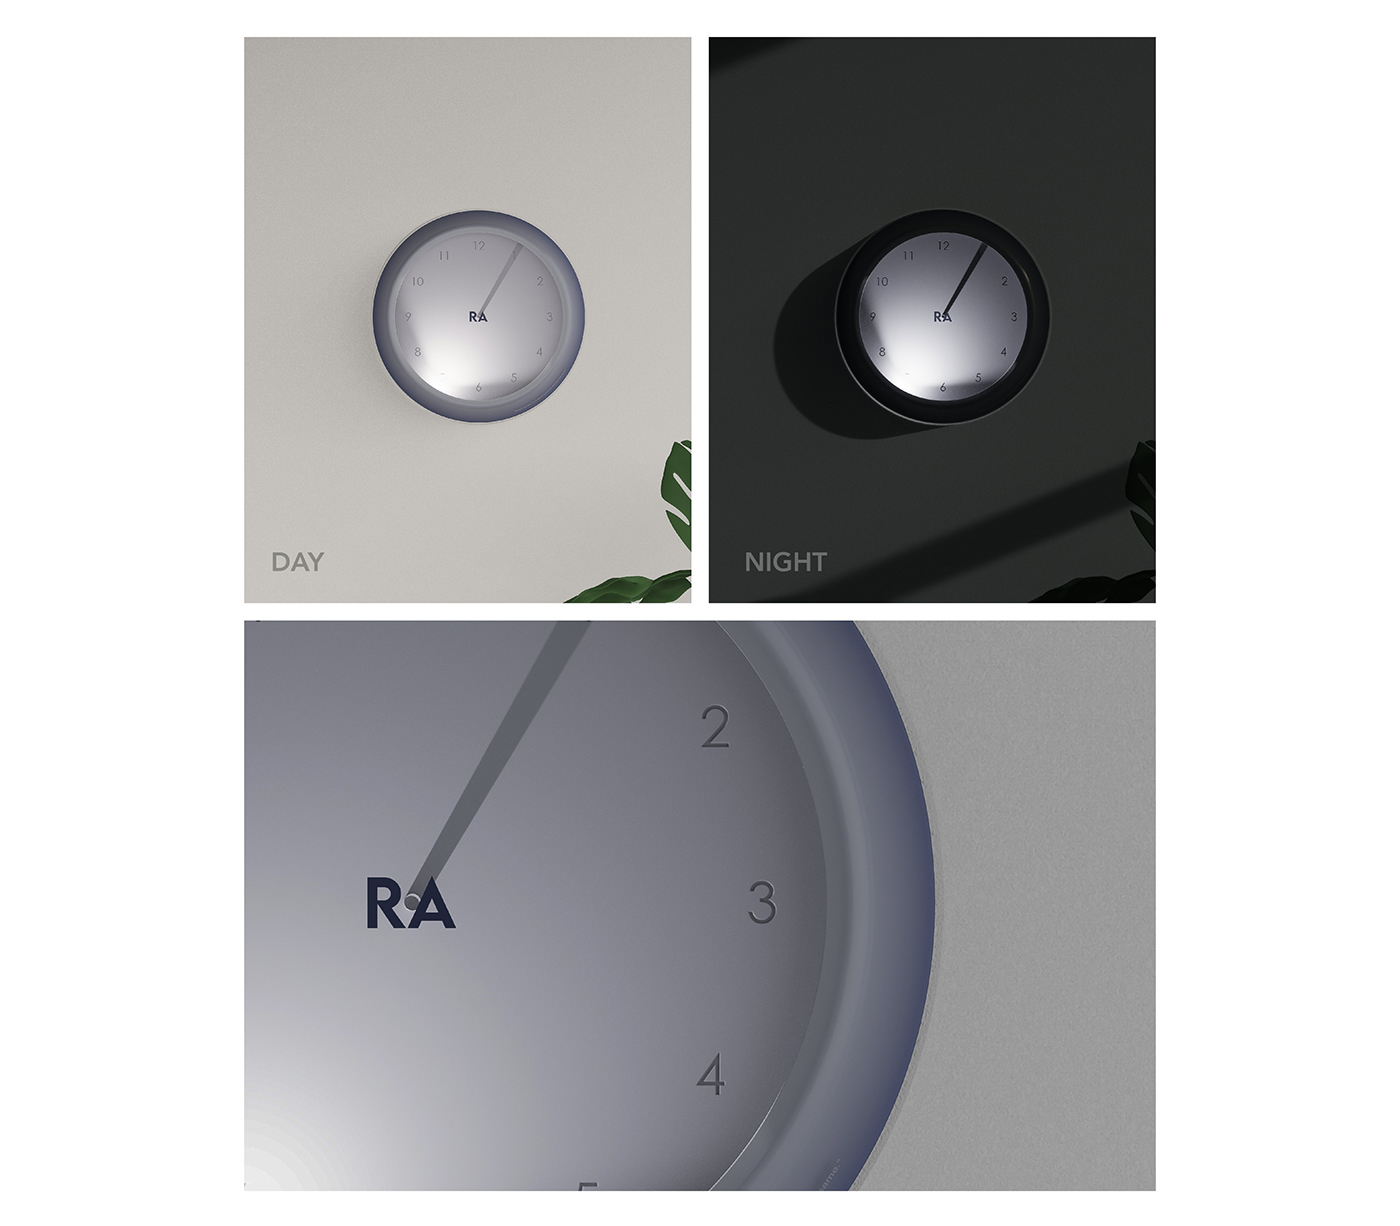 product design  clock design industrial design  concept watch design inspiration Lighting Design  light watch WALLCLOCK